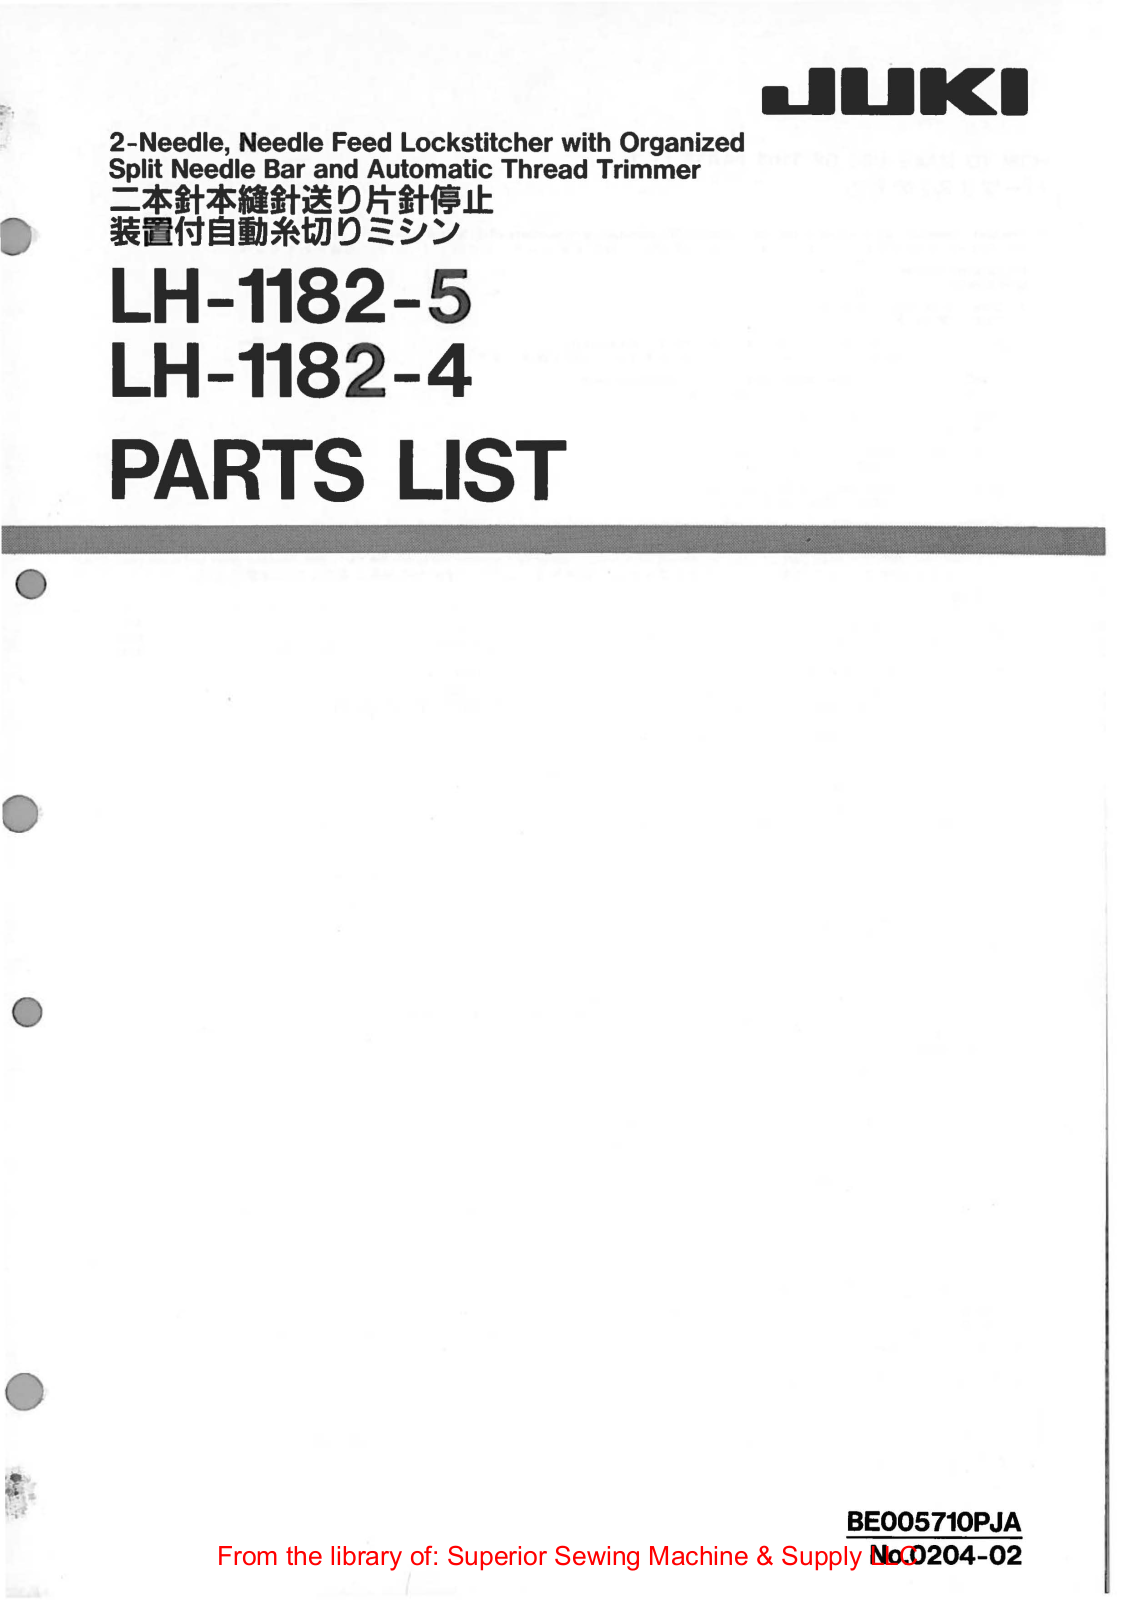 Juki LH-1182-4, LH-1182-5 Manual